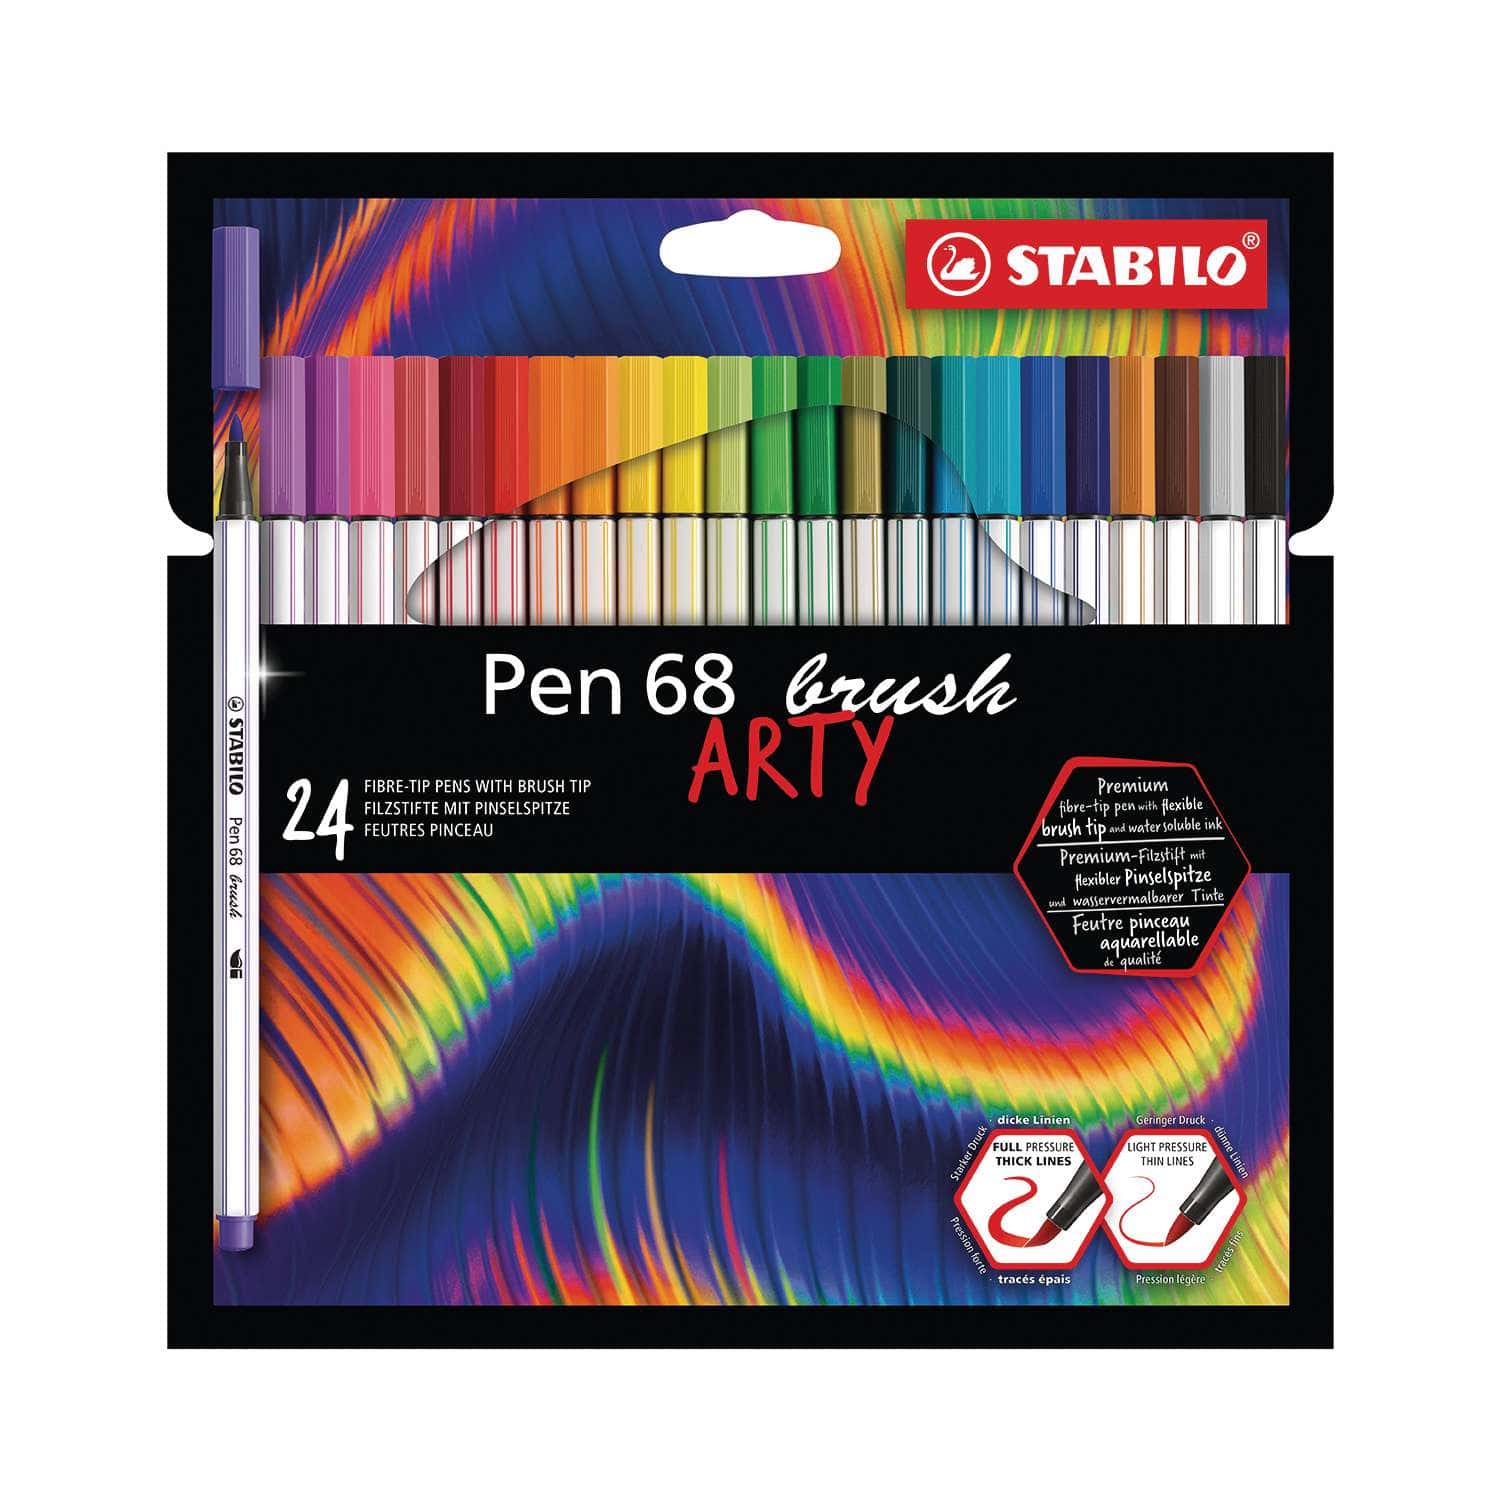 Stabilo Pen 68 Brush Marker – Chrysler Museum of Art, stabilo pen 68 brush  